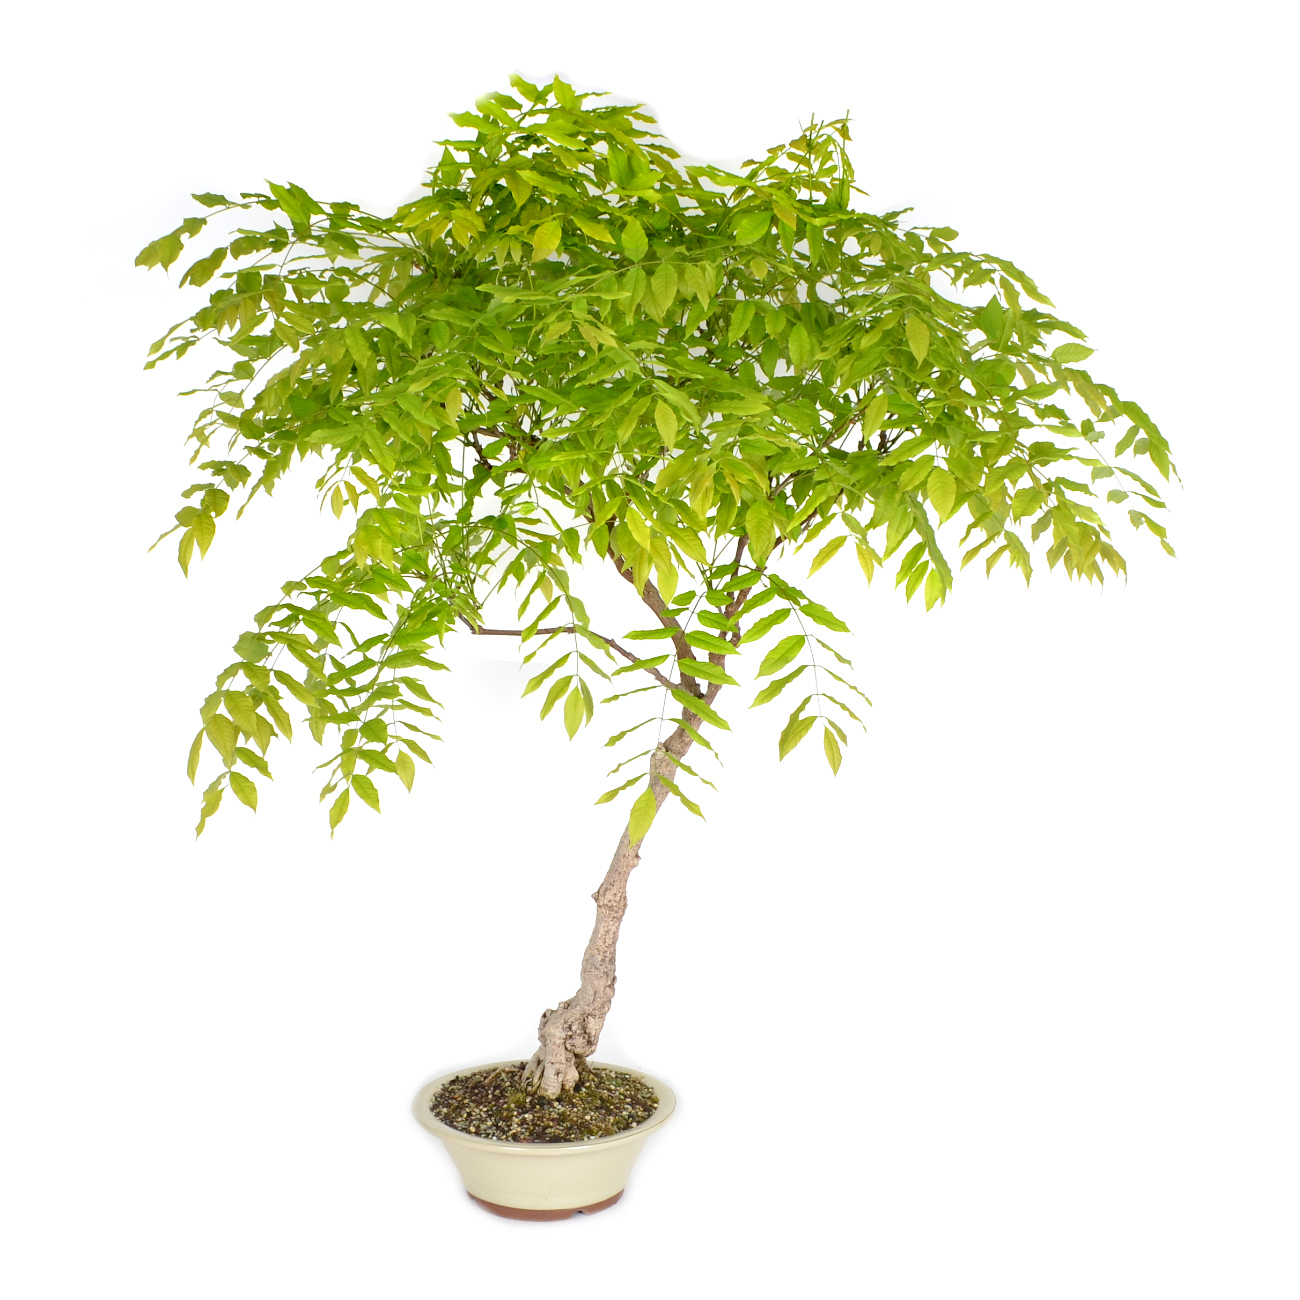 Virtue 10 stÃ¼cke Wisteria baum bonsai schÃ¶ne Glyzinien blume mehrjÃ¤hrige innen oder auÃŸen blÃ¼hende topfpflanzen fÃ¼r hausgarten anlage 1 